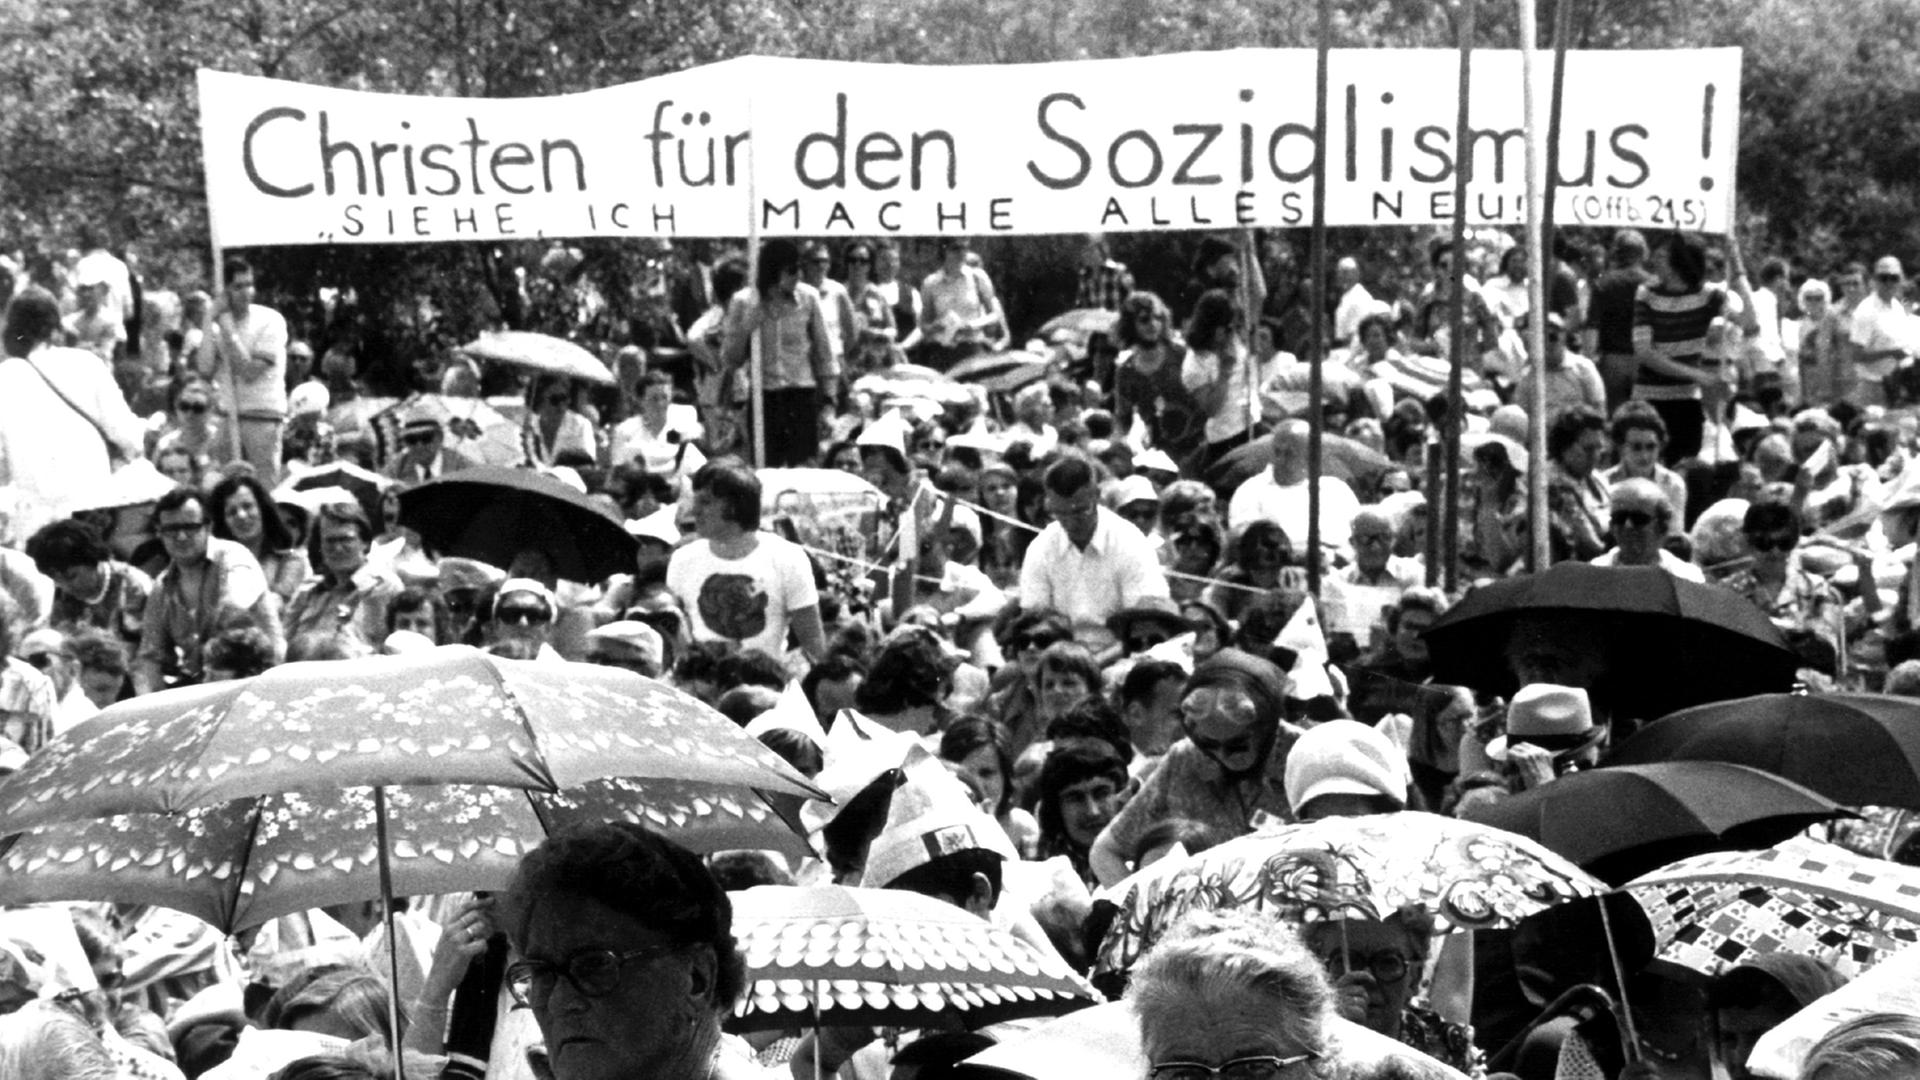 Mit einer Schlusskundgebung unter freiem Himmel ging am 15. Juni 1975 der 16. Deutsche Evangelische Kirchentag in Frankfurt am Main zu Ende. Ein Plakat mit der Aufschrift "Christen für den Sozialismus - Siehe, ich mache alles Neu!" ist zu sehen.